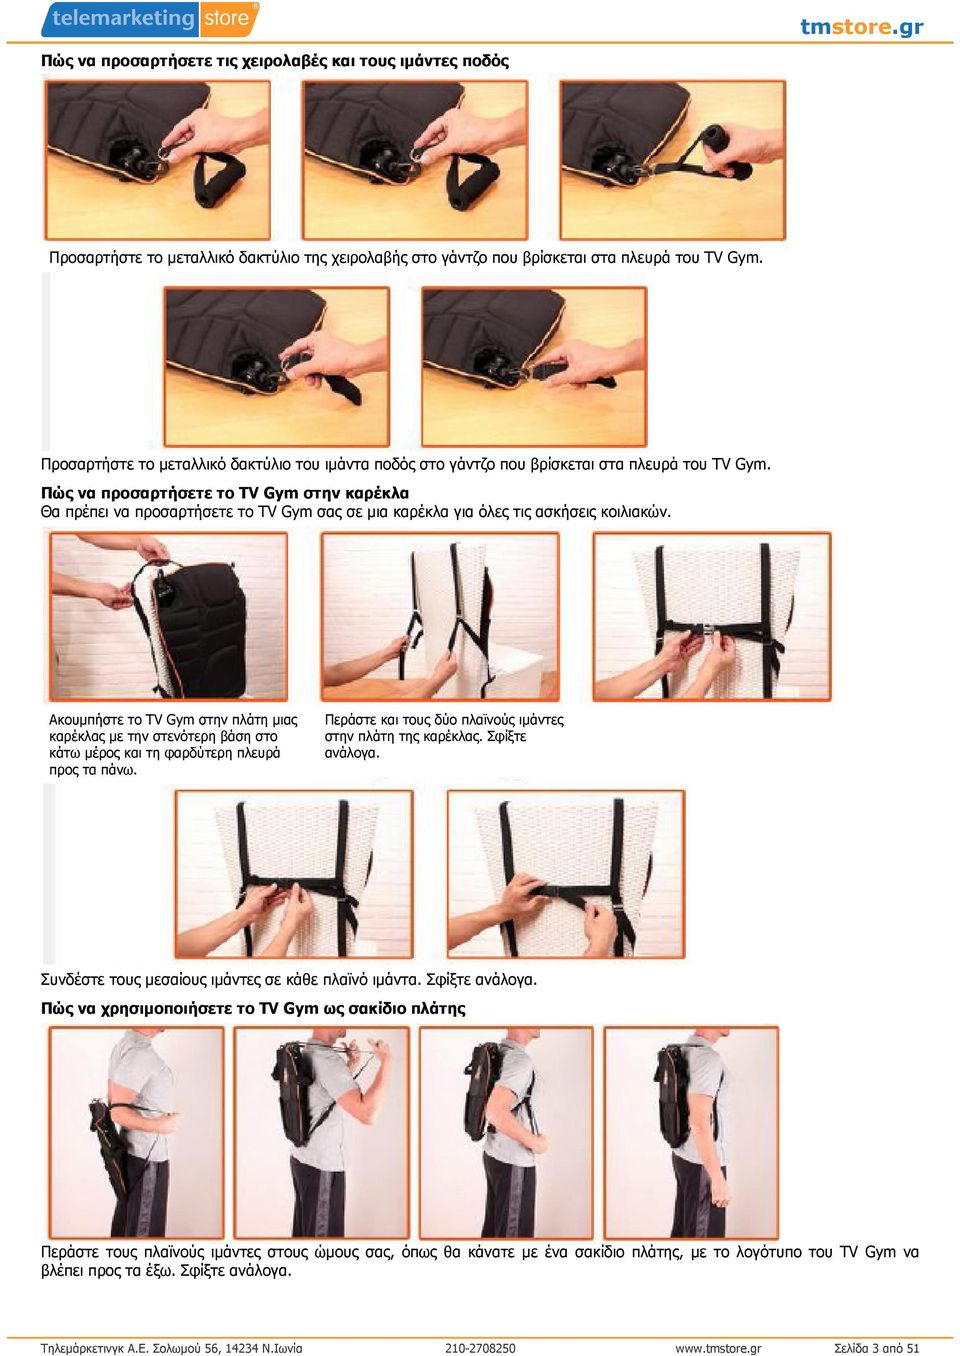 Πώς να προσαρτήσετε το TV Gym στην καρέκλα Θα πρέπει να προσαρτήσετε το TV Gym σας σε µια καρέκλα για όλες τις ασκήσεις κοιλιακών.